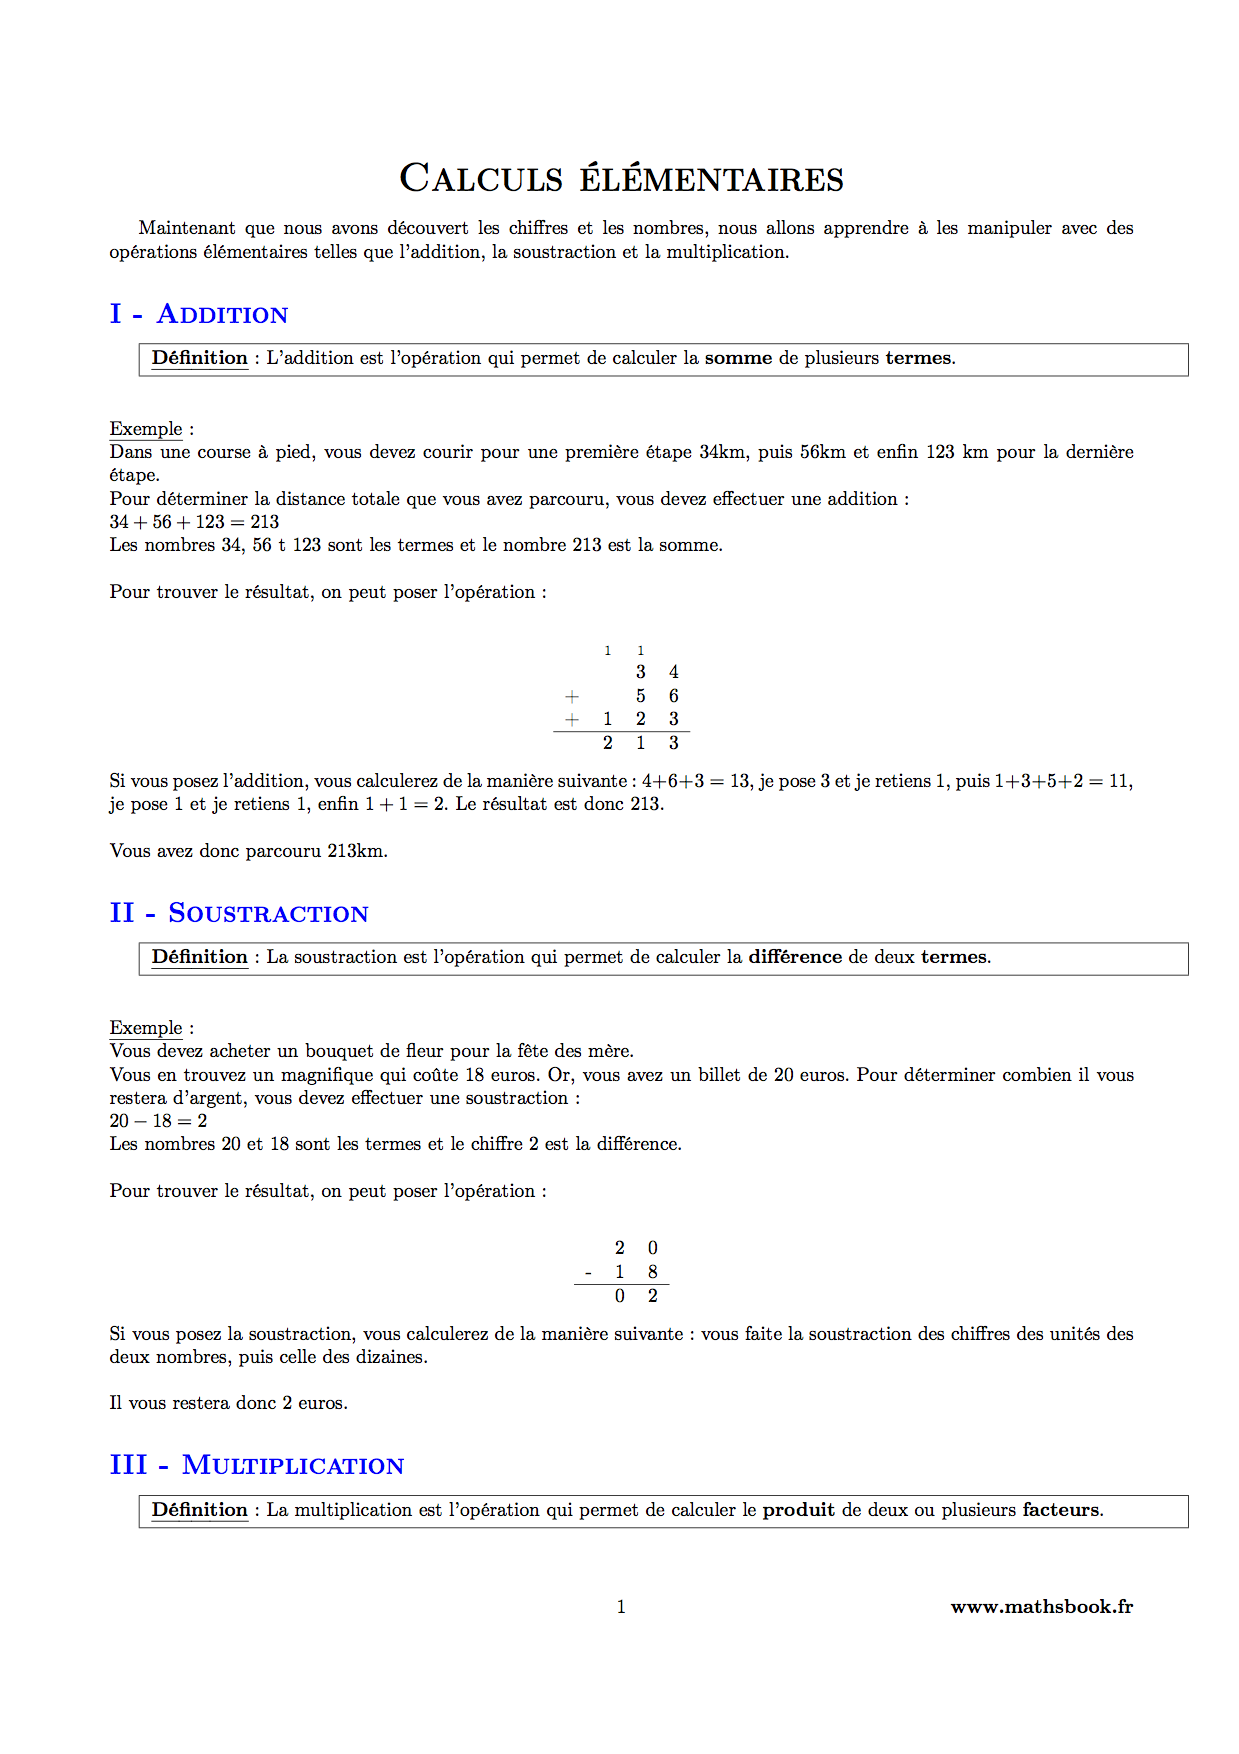 Calculs Elementaires Cours Pdf A Imprimer Maths 6eme